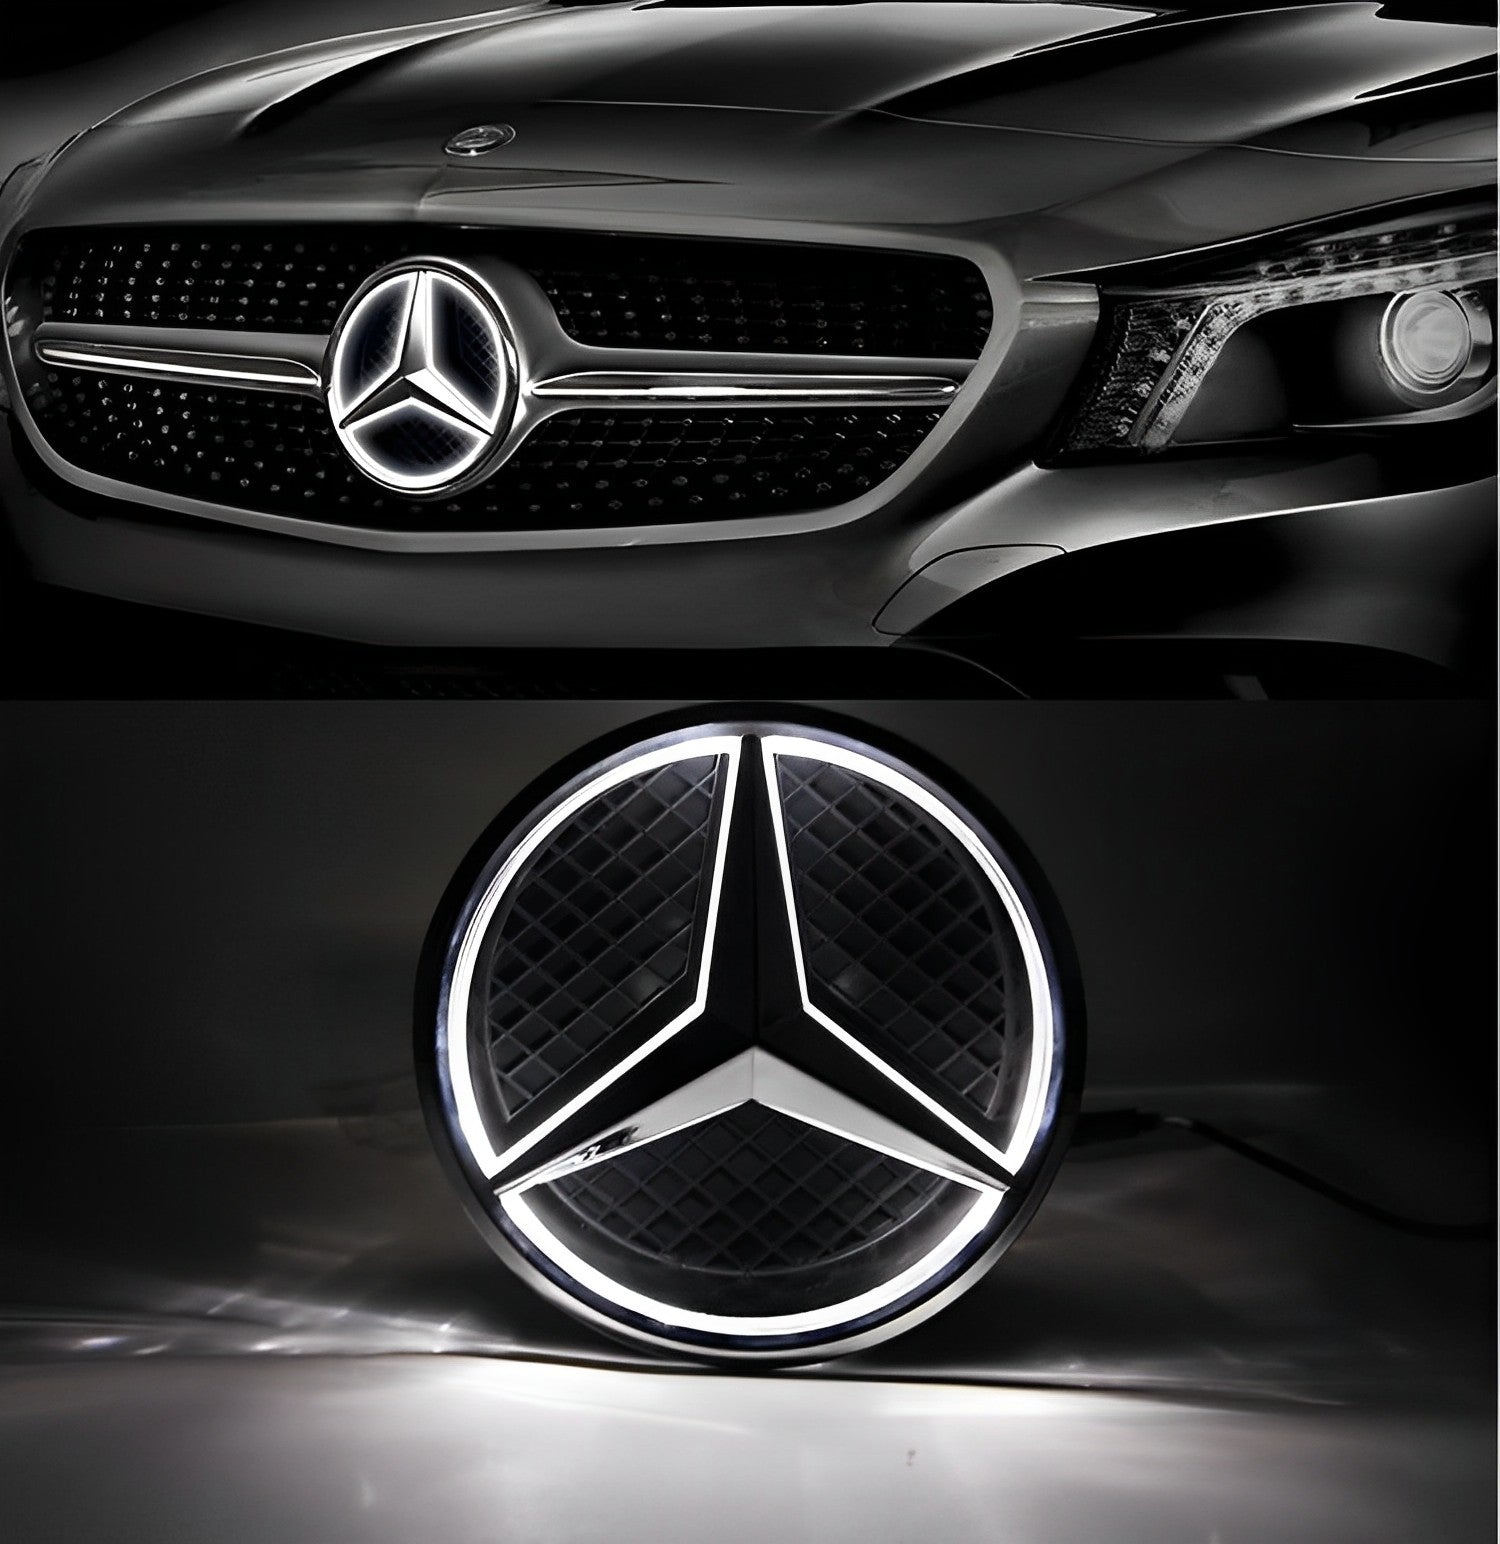 Mercedes-Benz Emblem